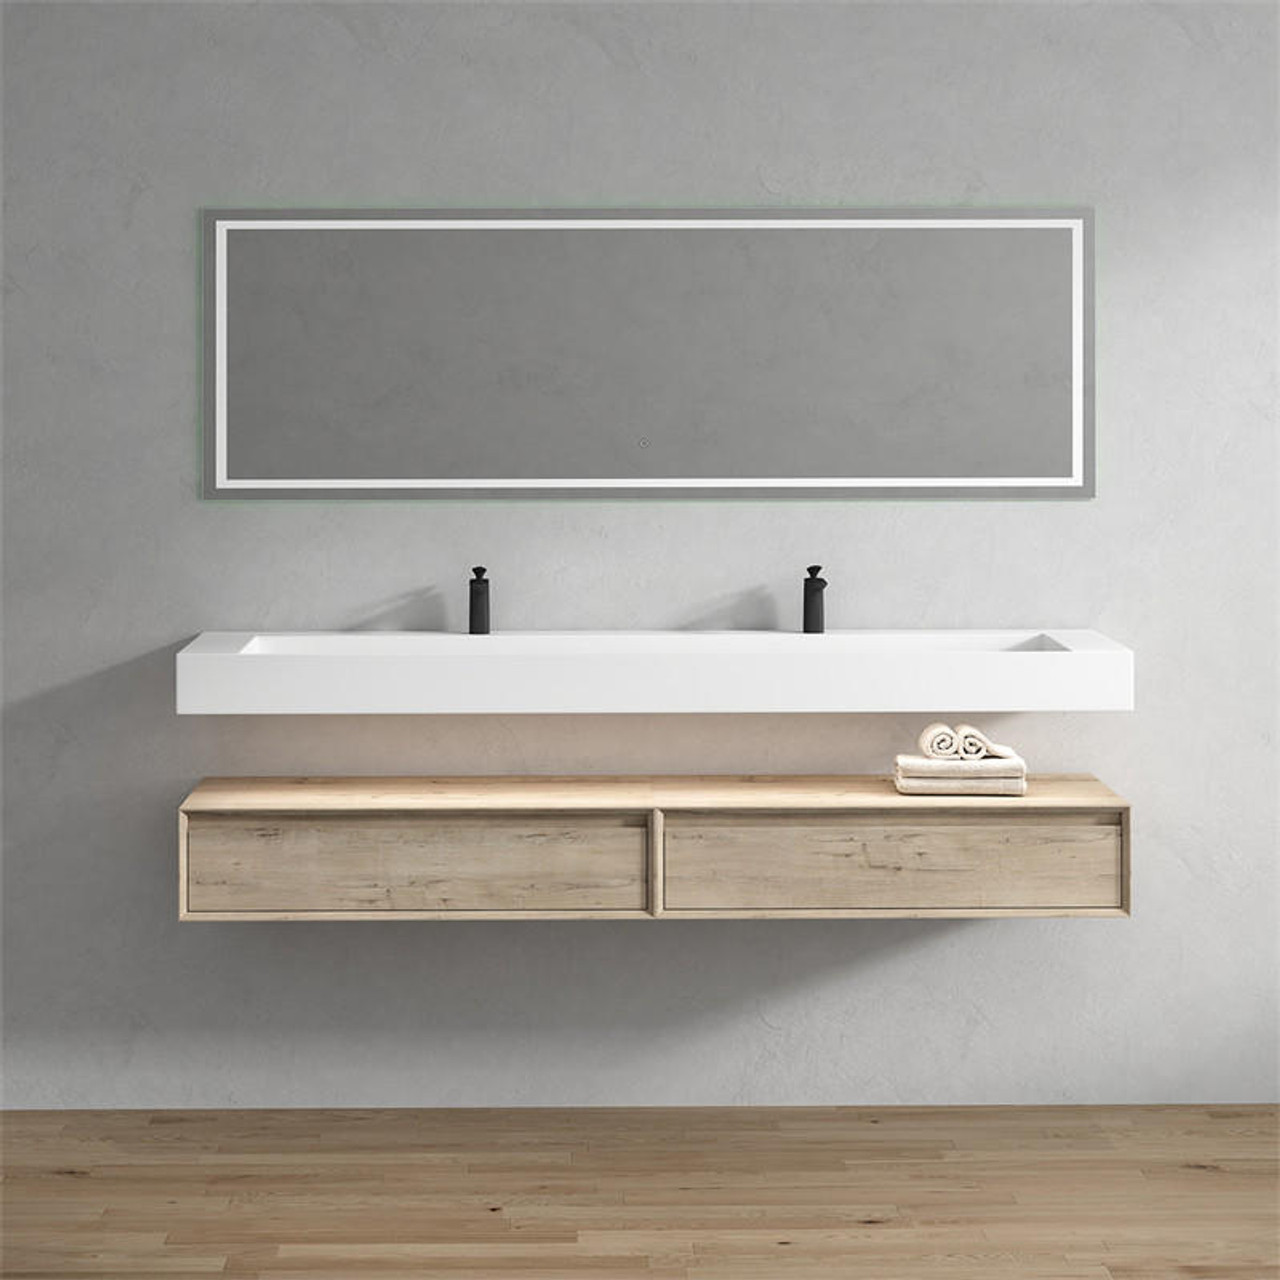 Alysa 84" Minimal Floating Bathroom Vanity in Light Oak | Moreno Bath Modern Wall Mounted Bathroom Vanities